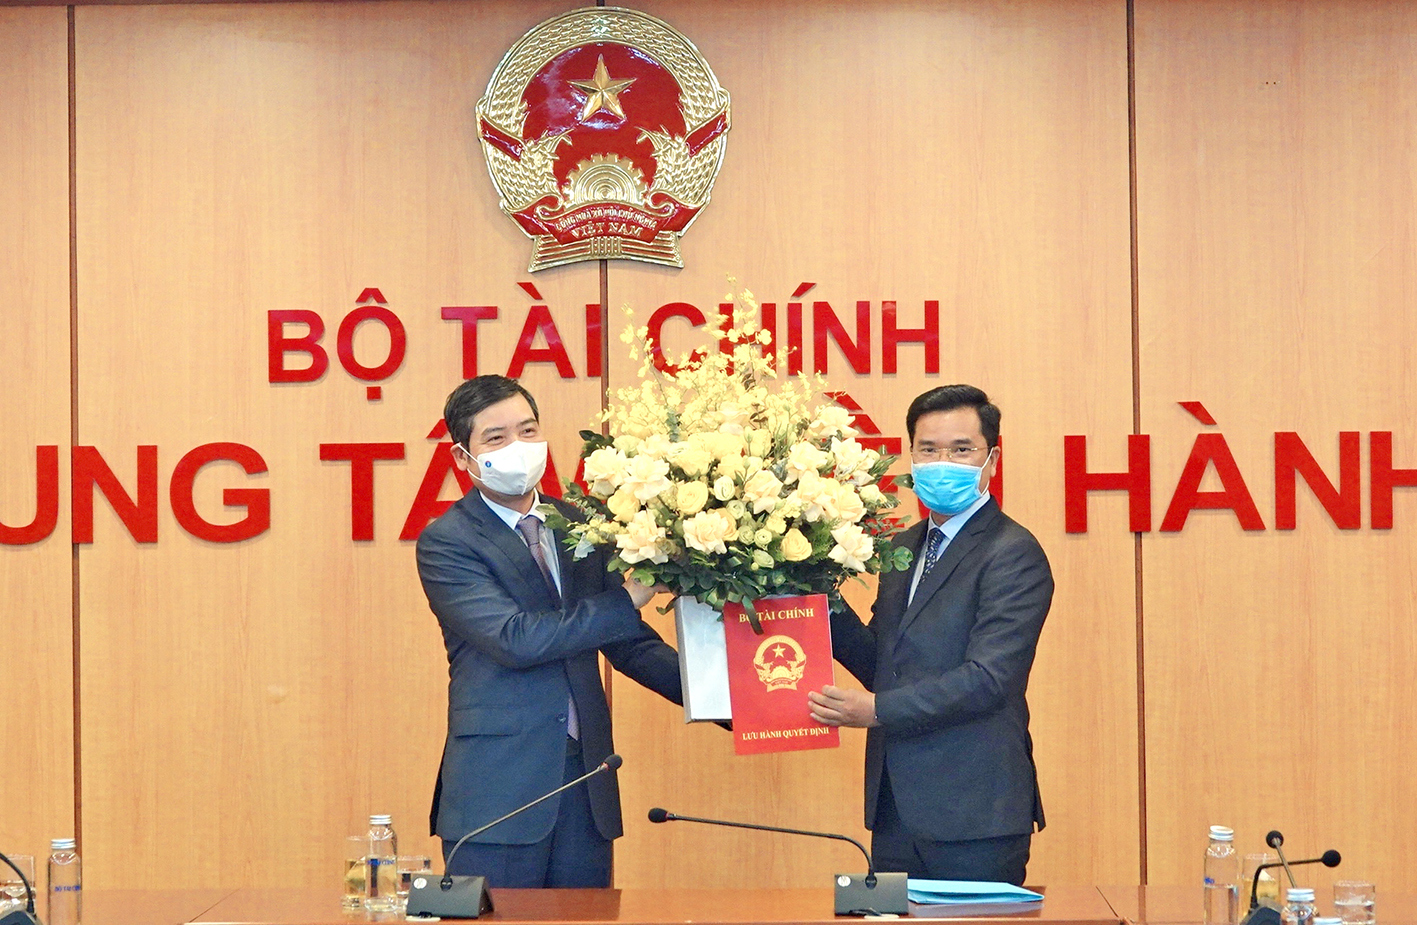 Thay mặt Ban Cán sự Đảng, Lãnh đạo Bộ Tài chính, Thứ trưởng Tạ Anh Tuấn trao quyết định bổ nhiệm ông Nguyễn Như Quỳnh giữ chức Viện trưởng Viện Chiến lược và Chính sách tài chính.